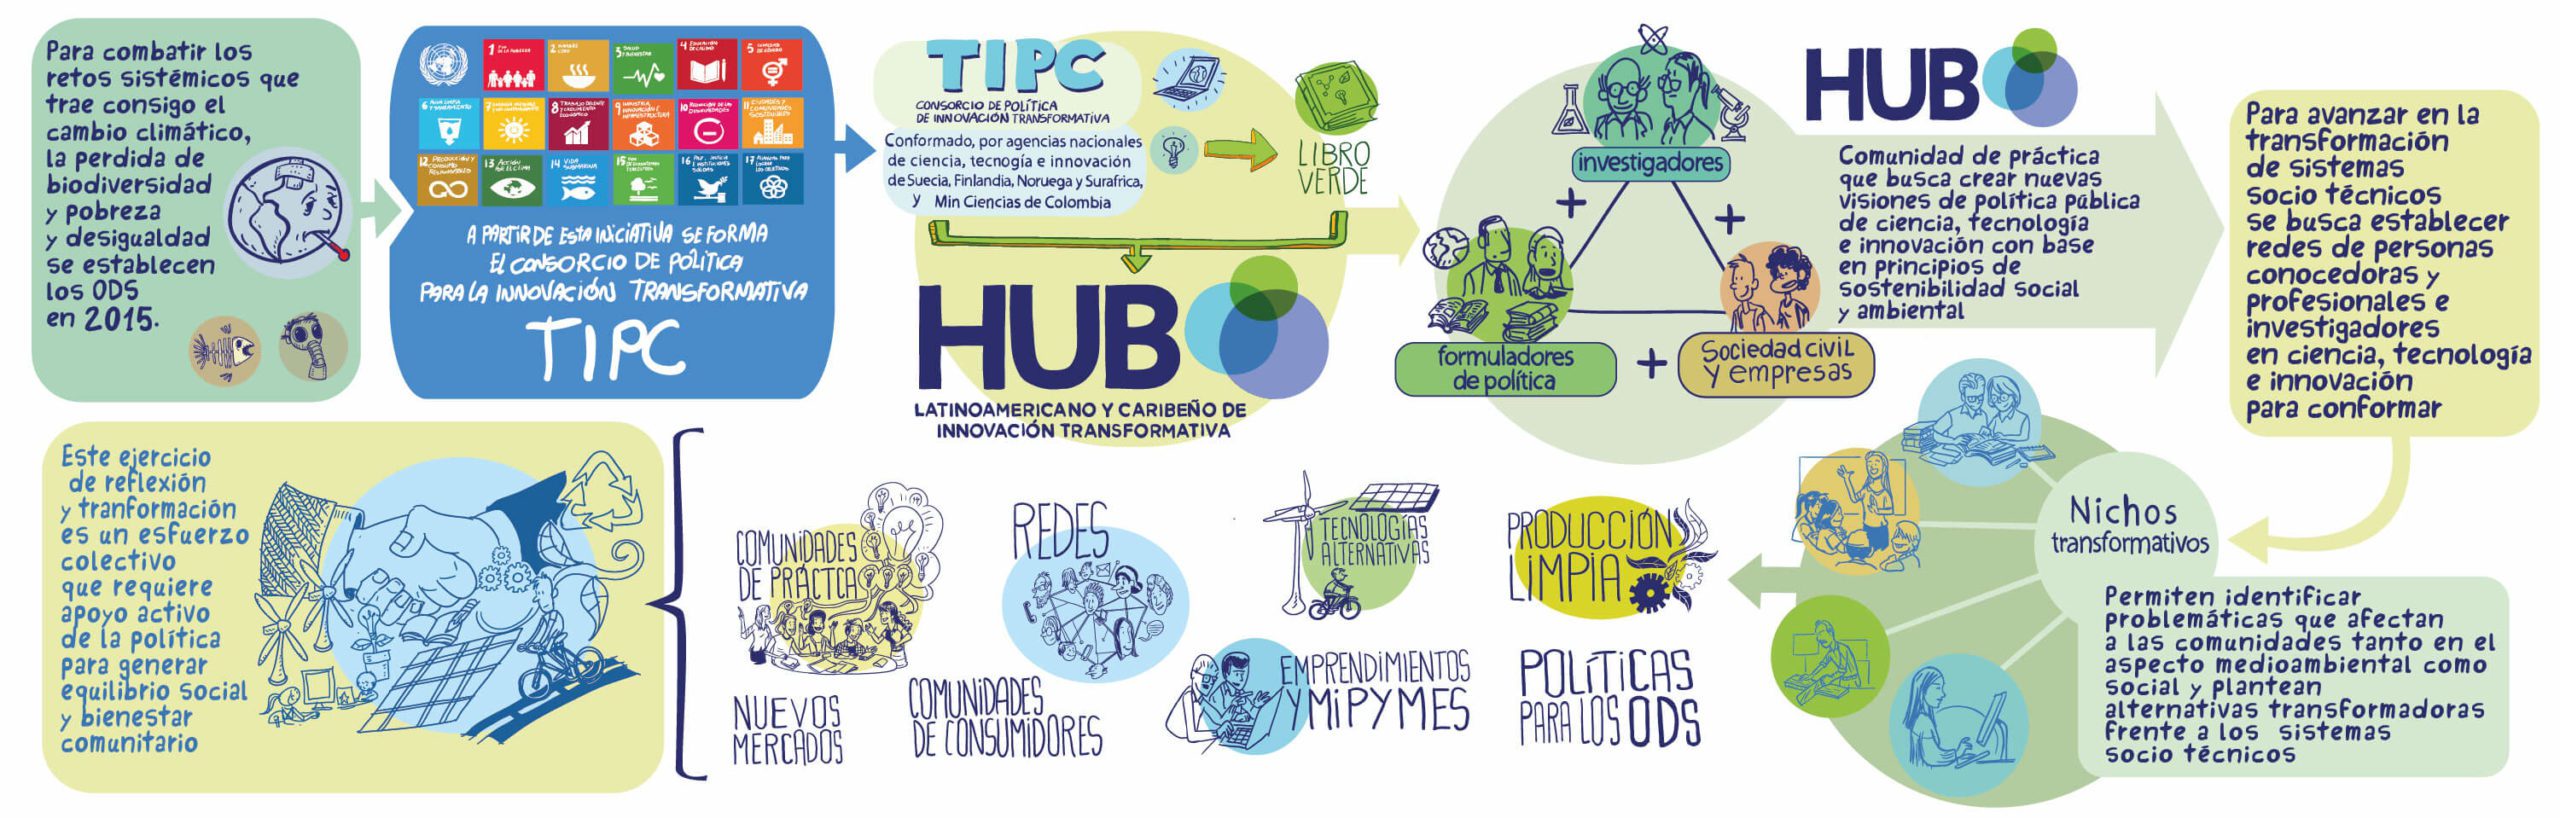 El HUBLAyCTIP Lanza Ilustración Sobre la Historia del Enfoque de Políticas de Innovación Transformativa y la Creación del HUB.